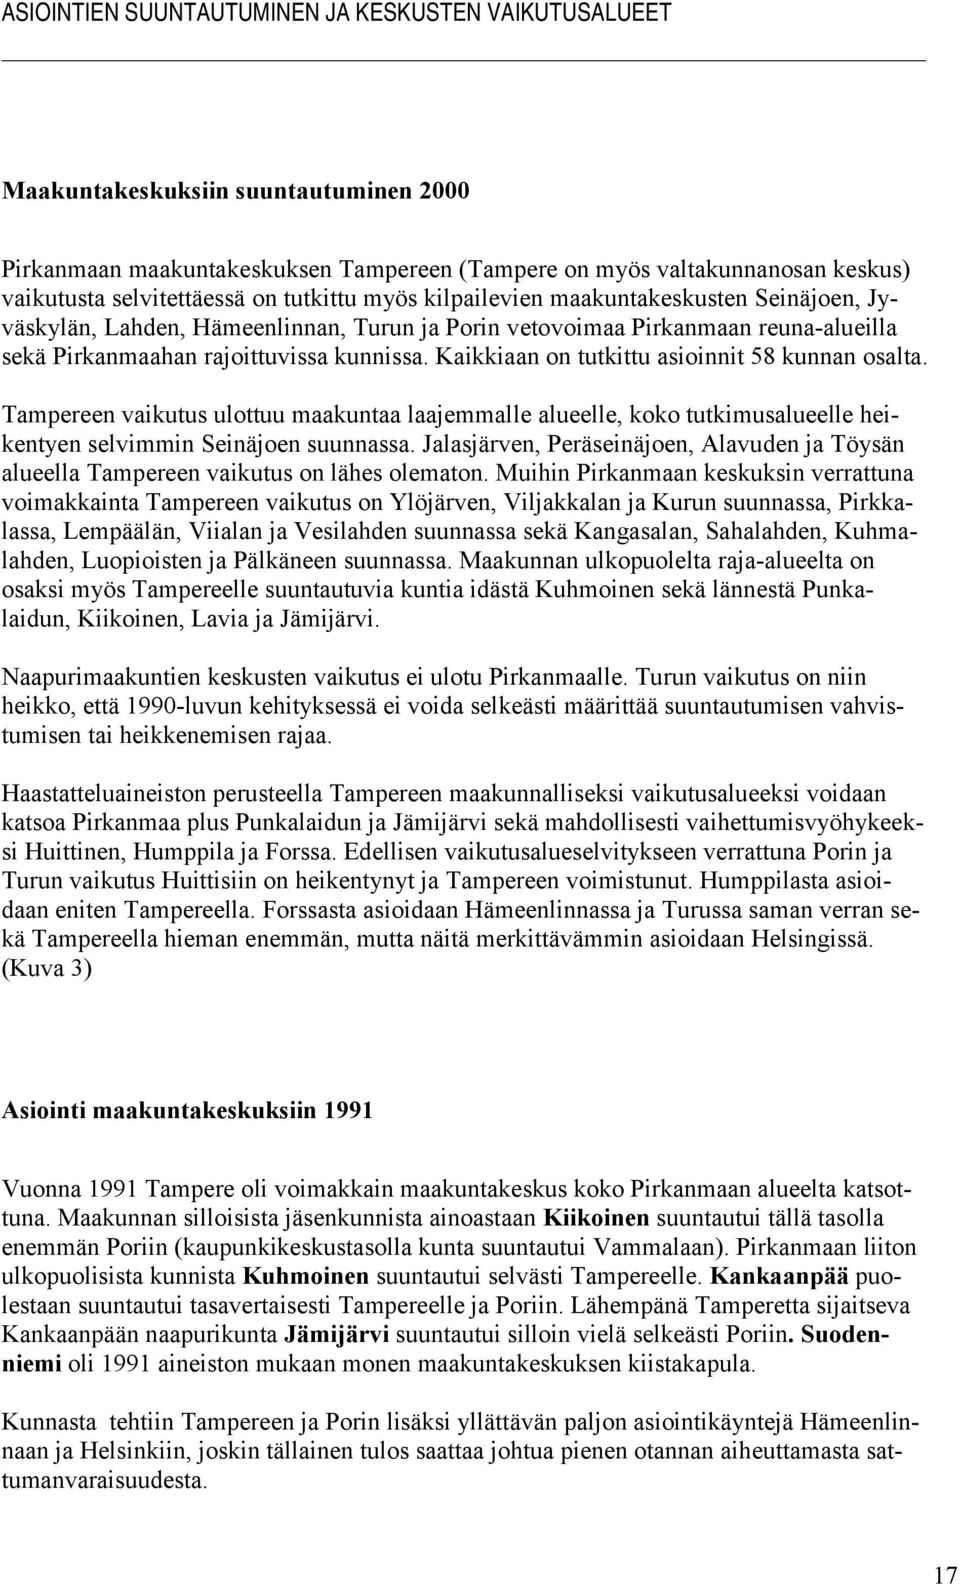 Kaikkiaan on tutkittu asioinnit 58 kunnan osalta. Tampereen vaikutus ulottuu maakuntaa laajemmalle alueelle, koko tutkimusalueelle heikentyen selvimmin Seinäjoen suunnassa.